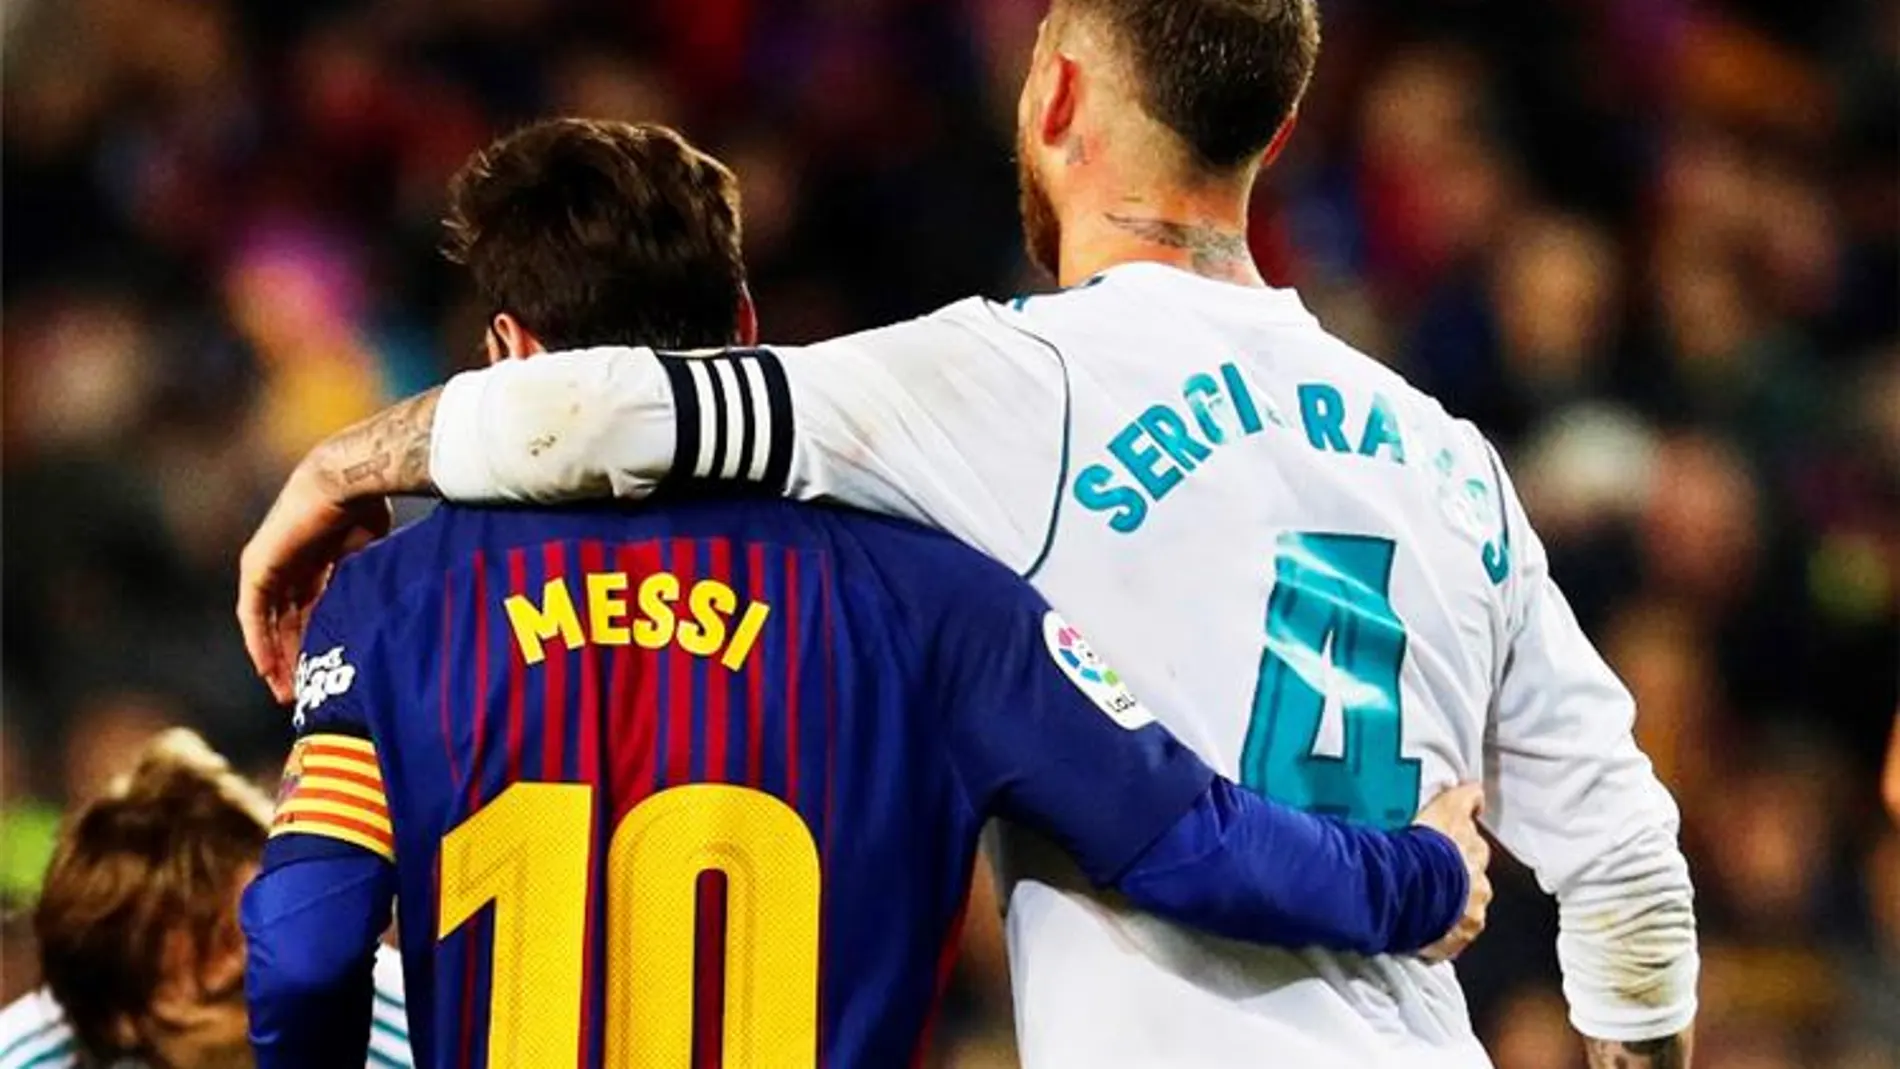 Esta foto ha subido a redes sociales el hermano del dueño del PSG, emocionado con la llegada de Messi y Ramos al club